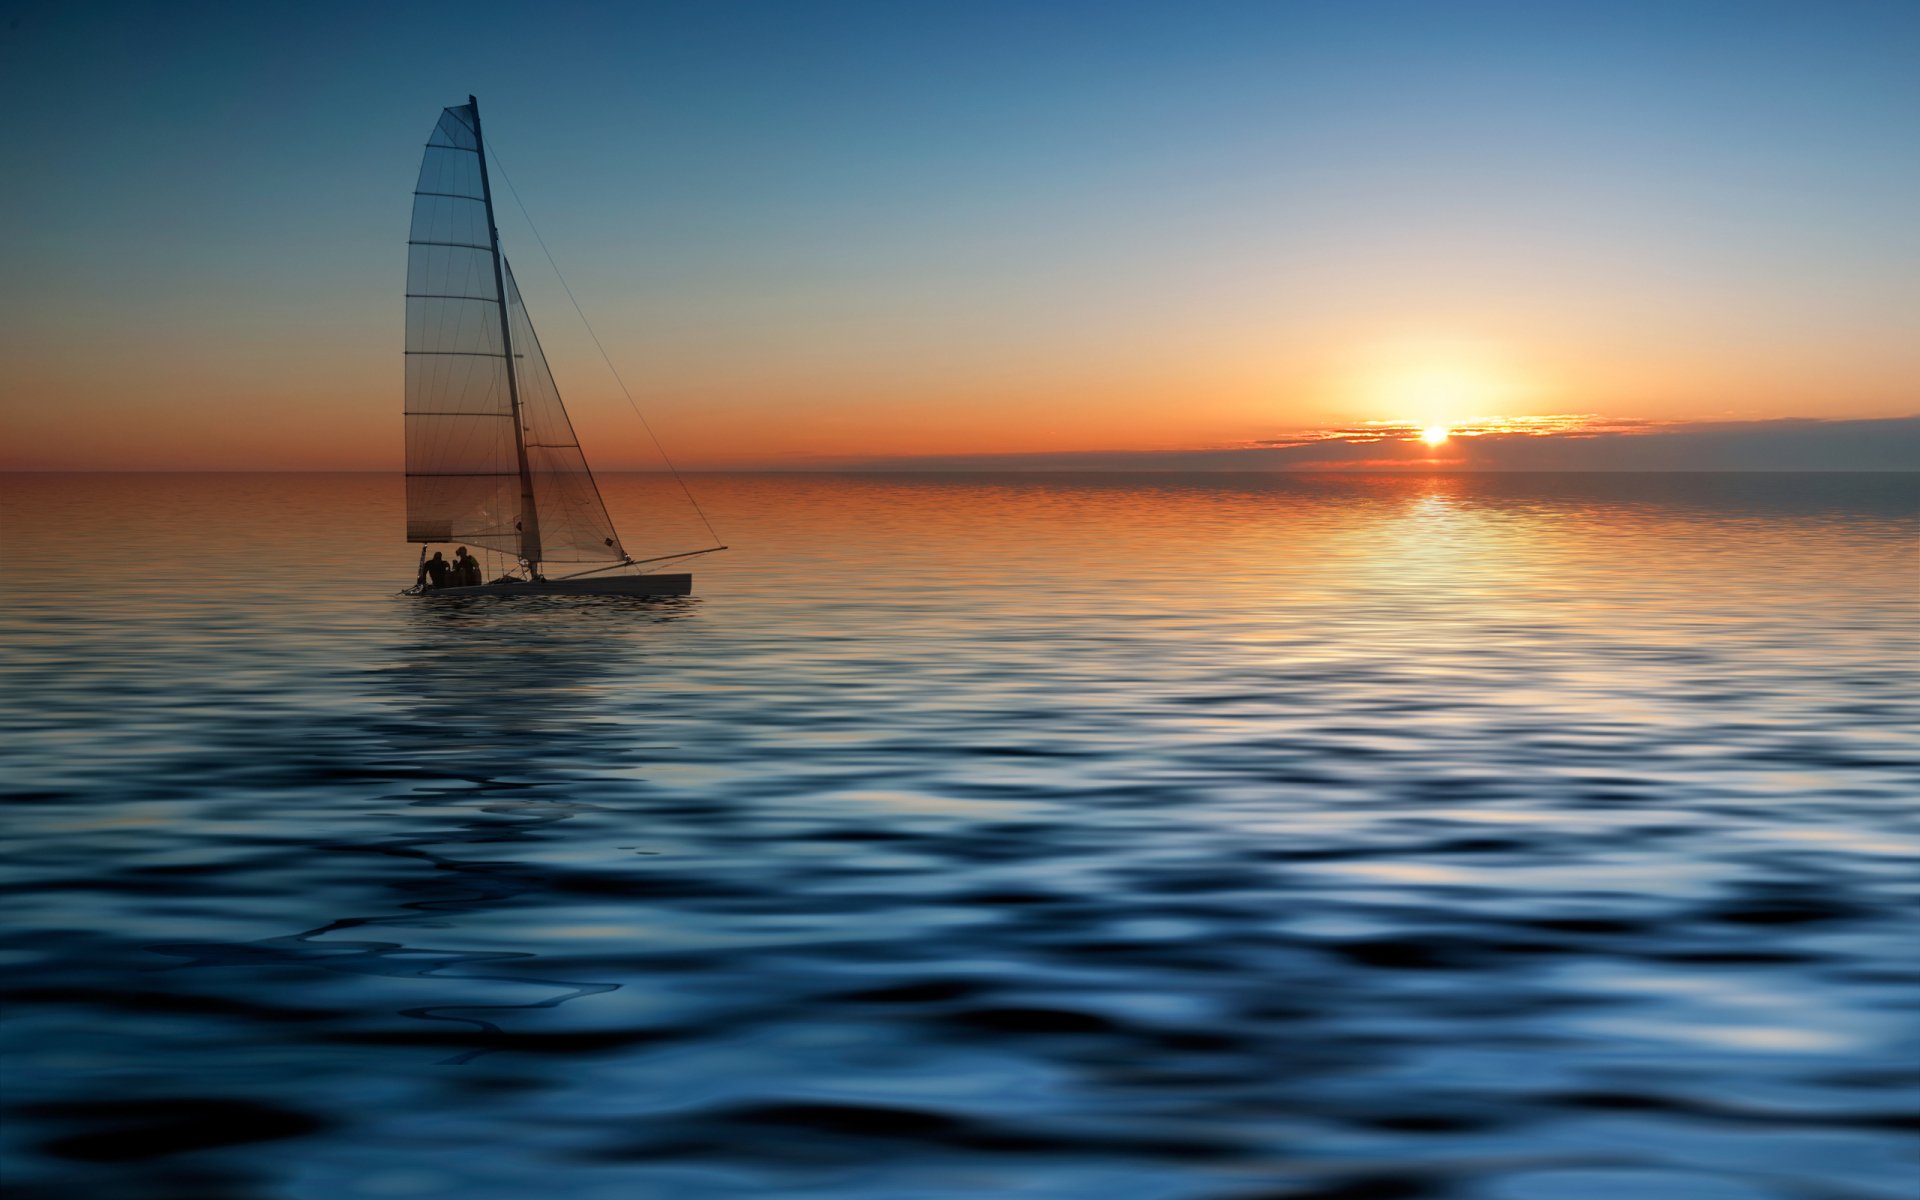 Sailboat HD Wallpaper - Những bức hình nền với hình ảnh của những con thuyền buồm trên bầu trời mênh mông sẽ đưa bạn đến với những cảm nhận sâu sắc về sự tự do. Hãy để những cảnh tượng tự nhiên này truyền cảm hứng và thư giãn cho bạn.